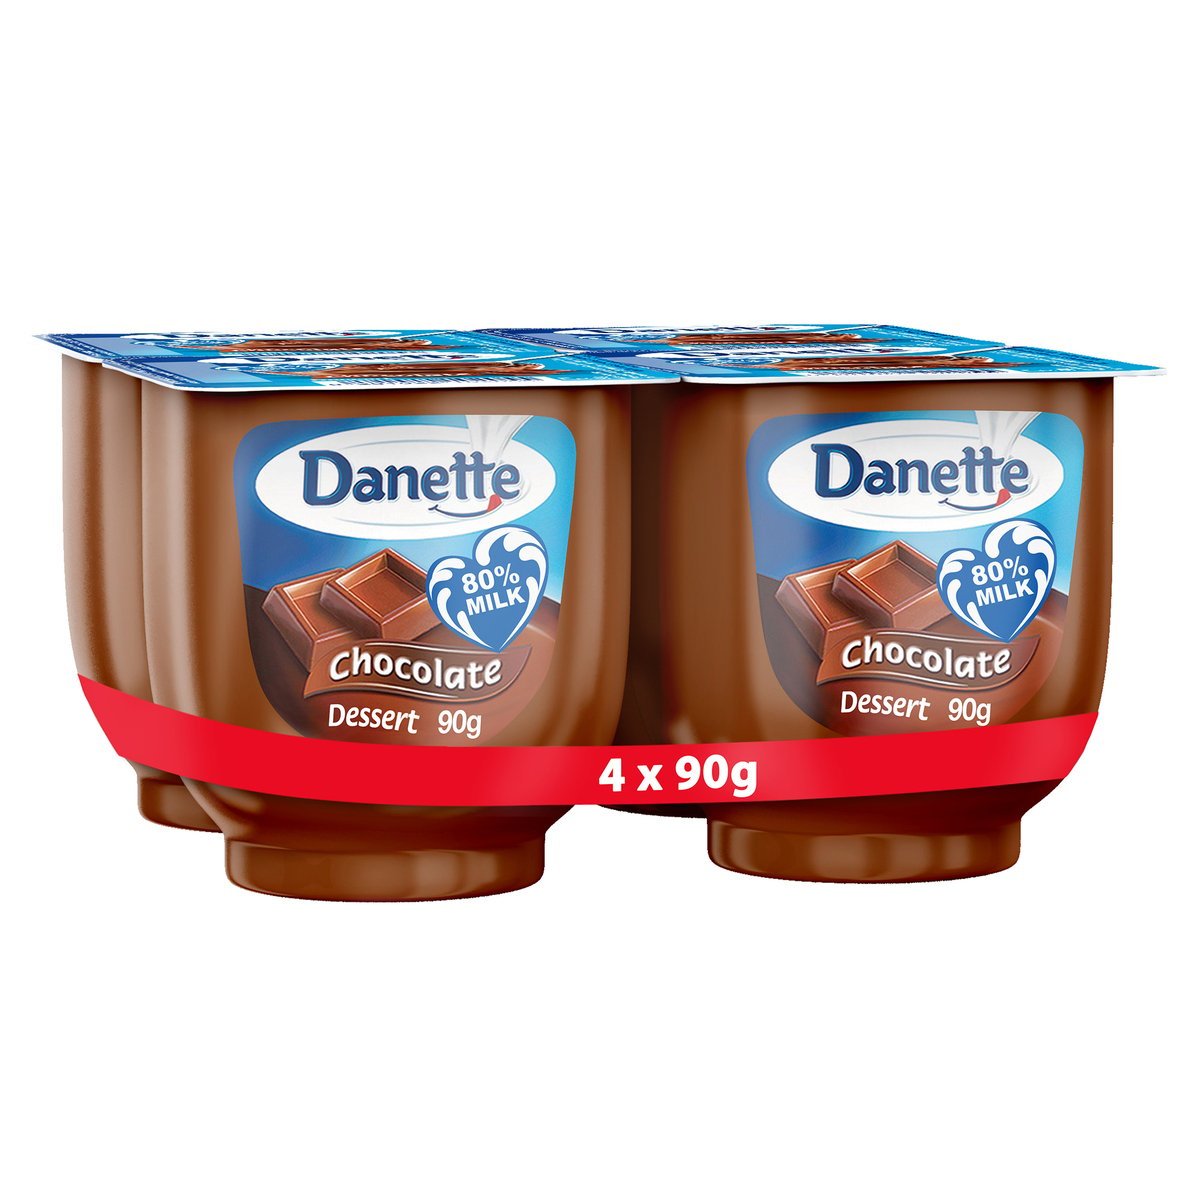 دانيت حلوى بنكهة الشوكولاته 90جم